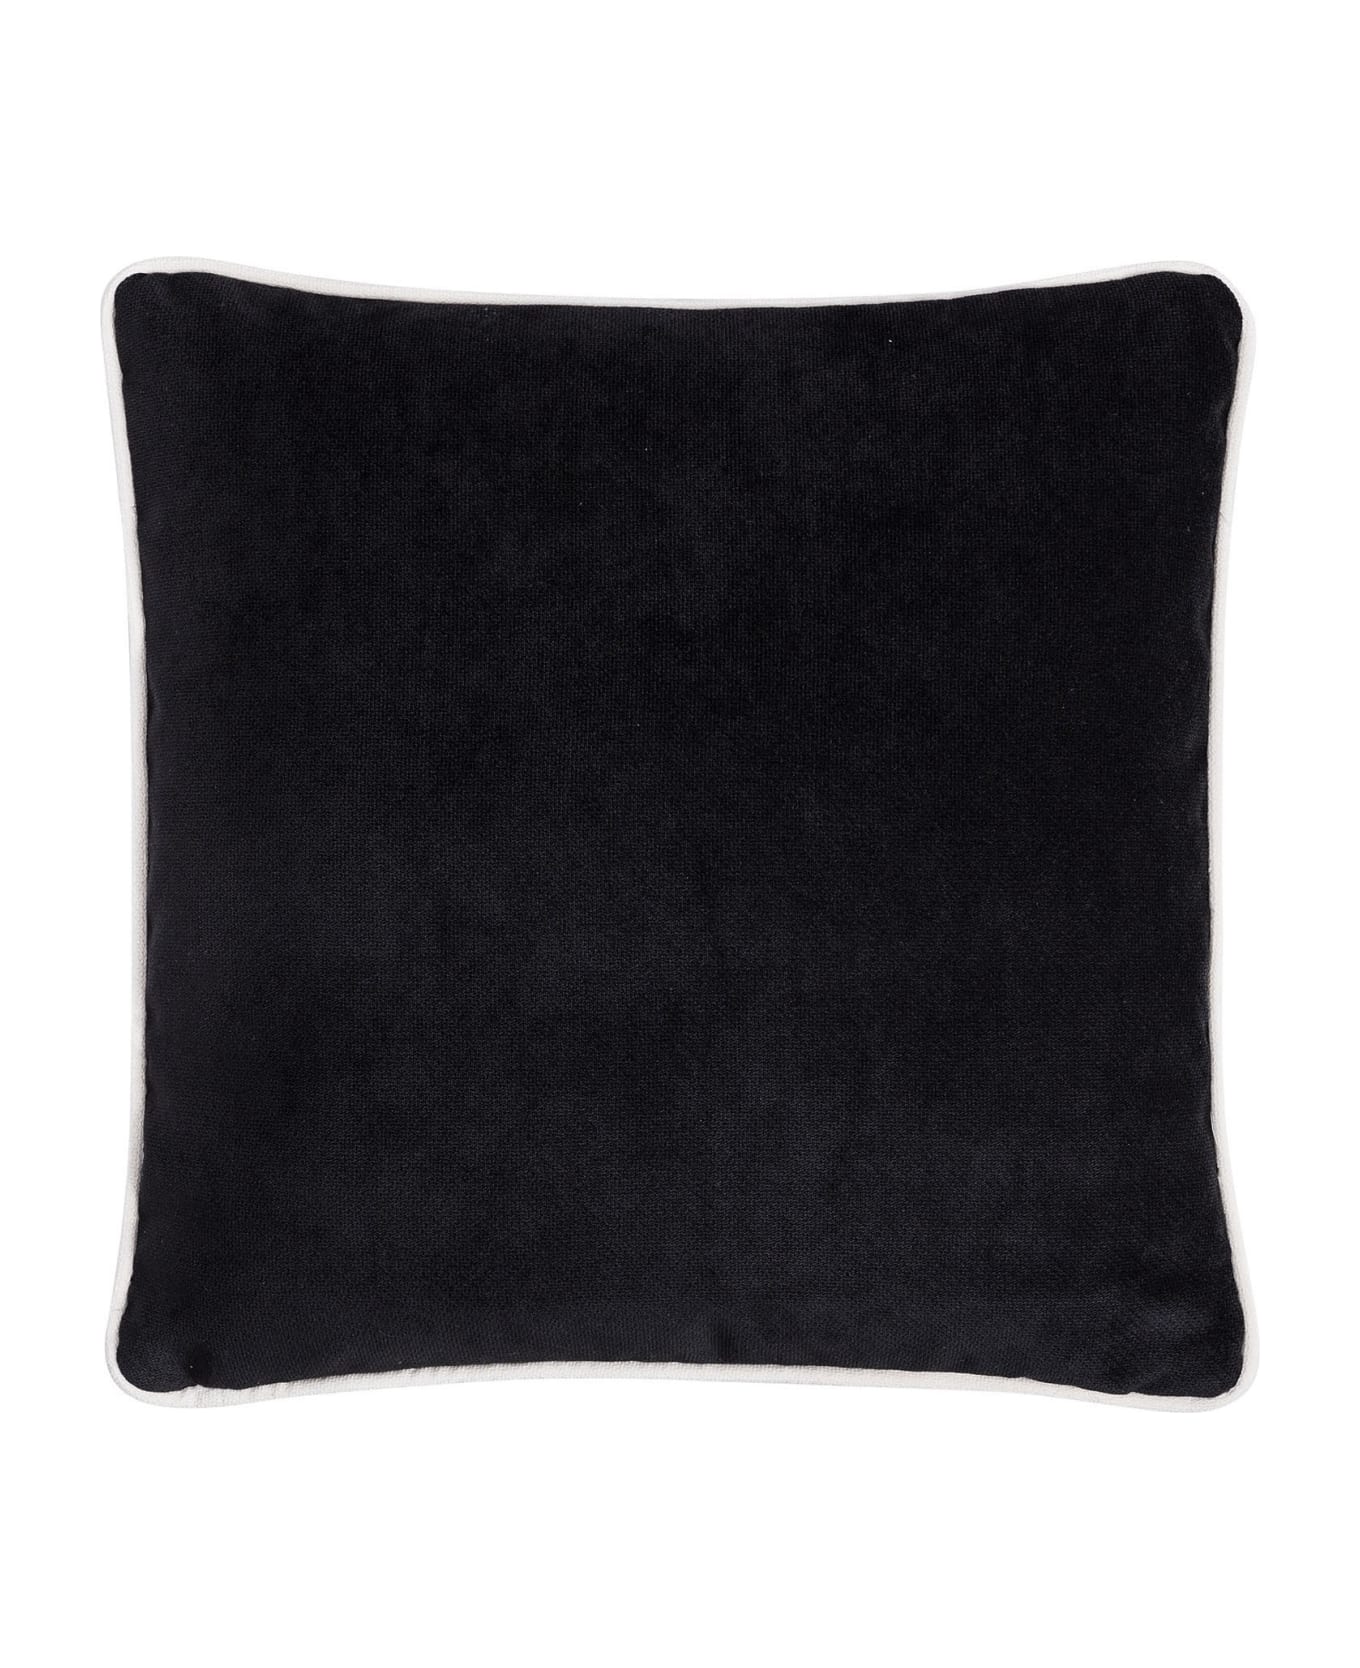 Lo Decor Happy Frame Velvet Pillow - Black/Cream